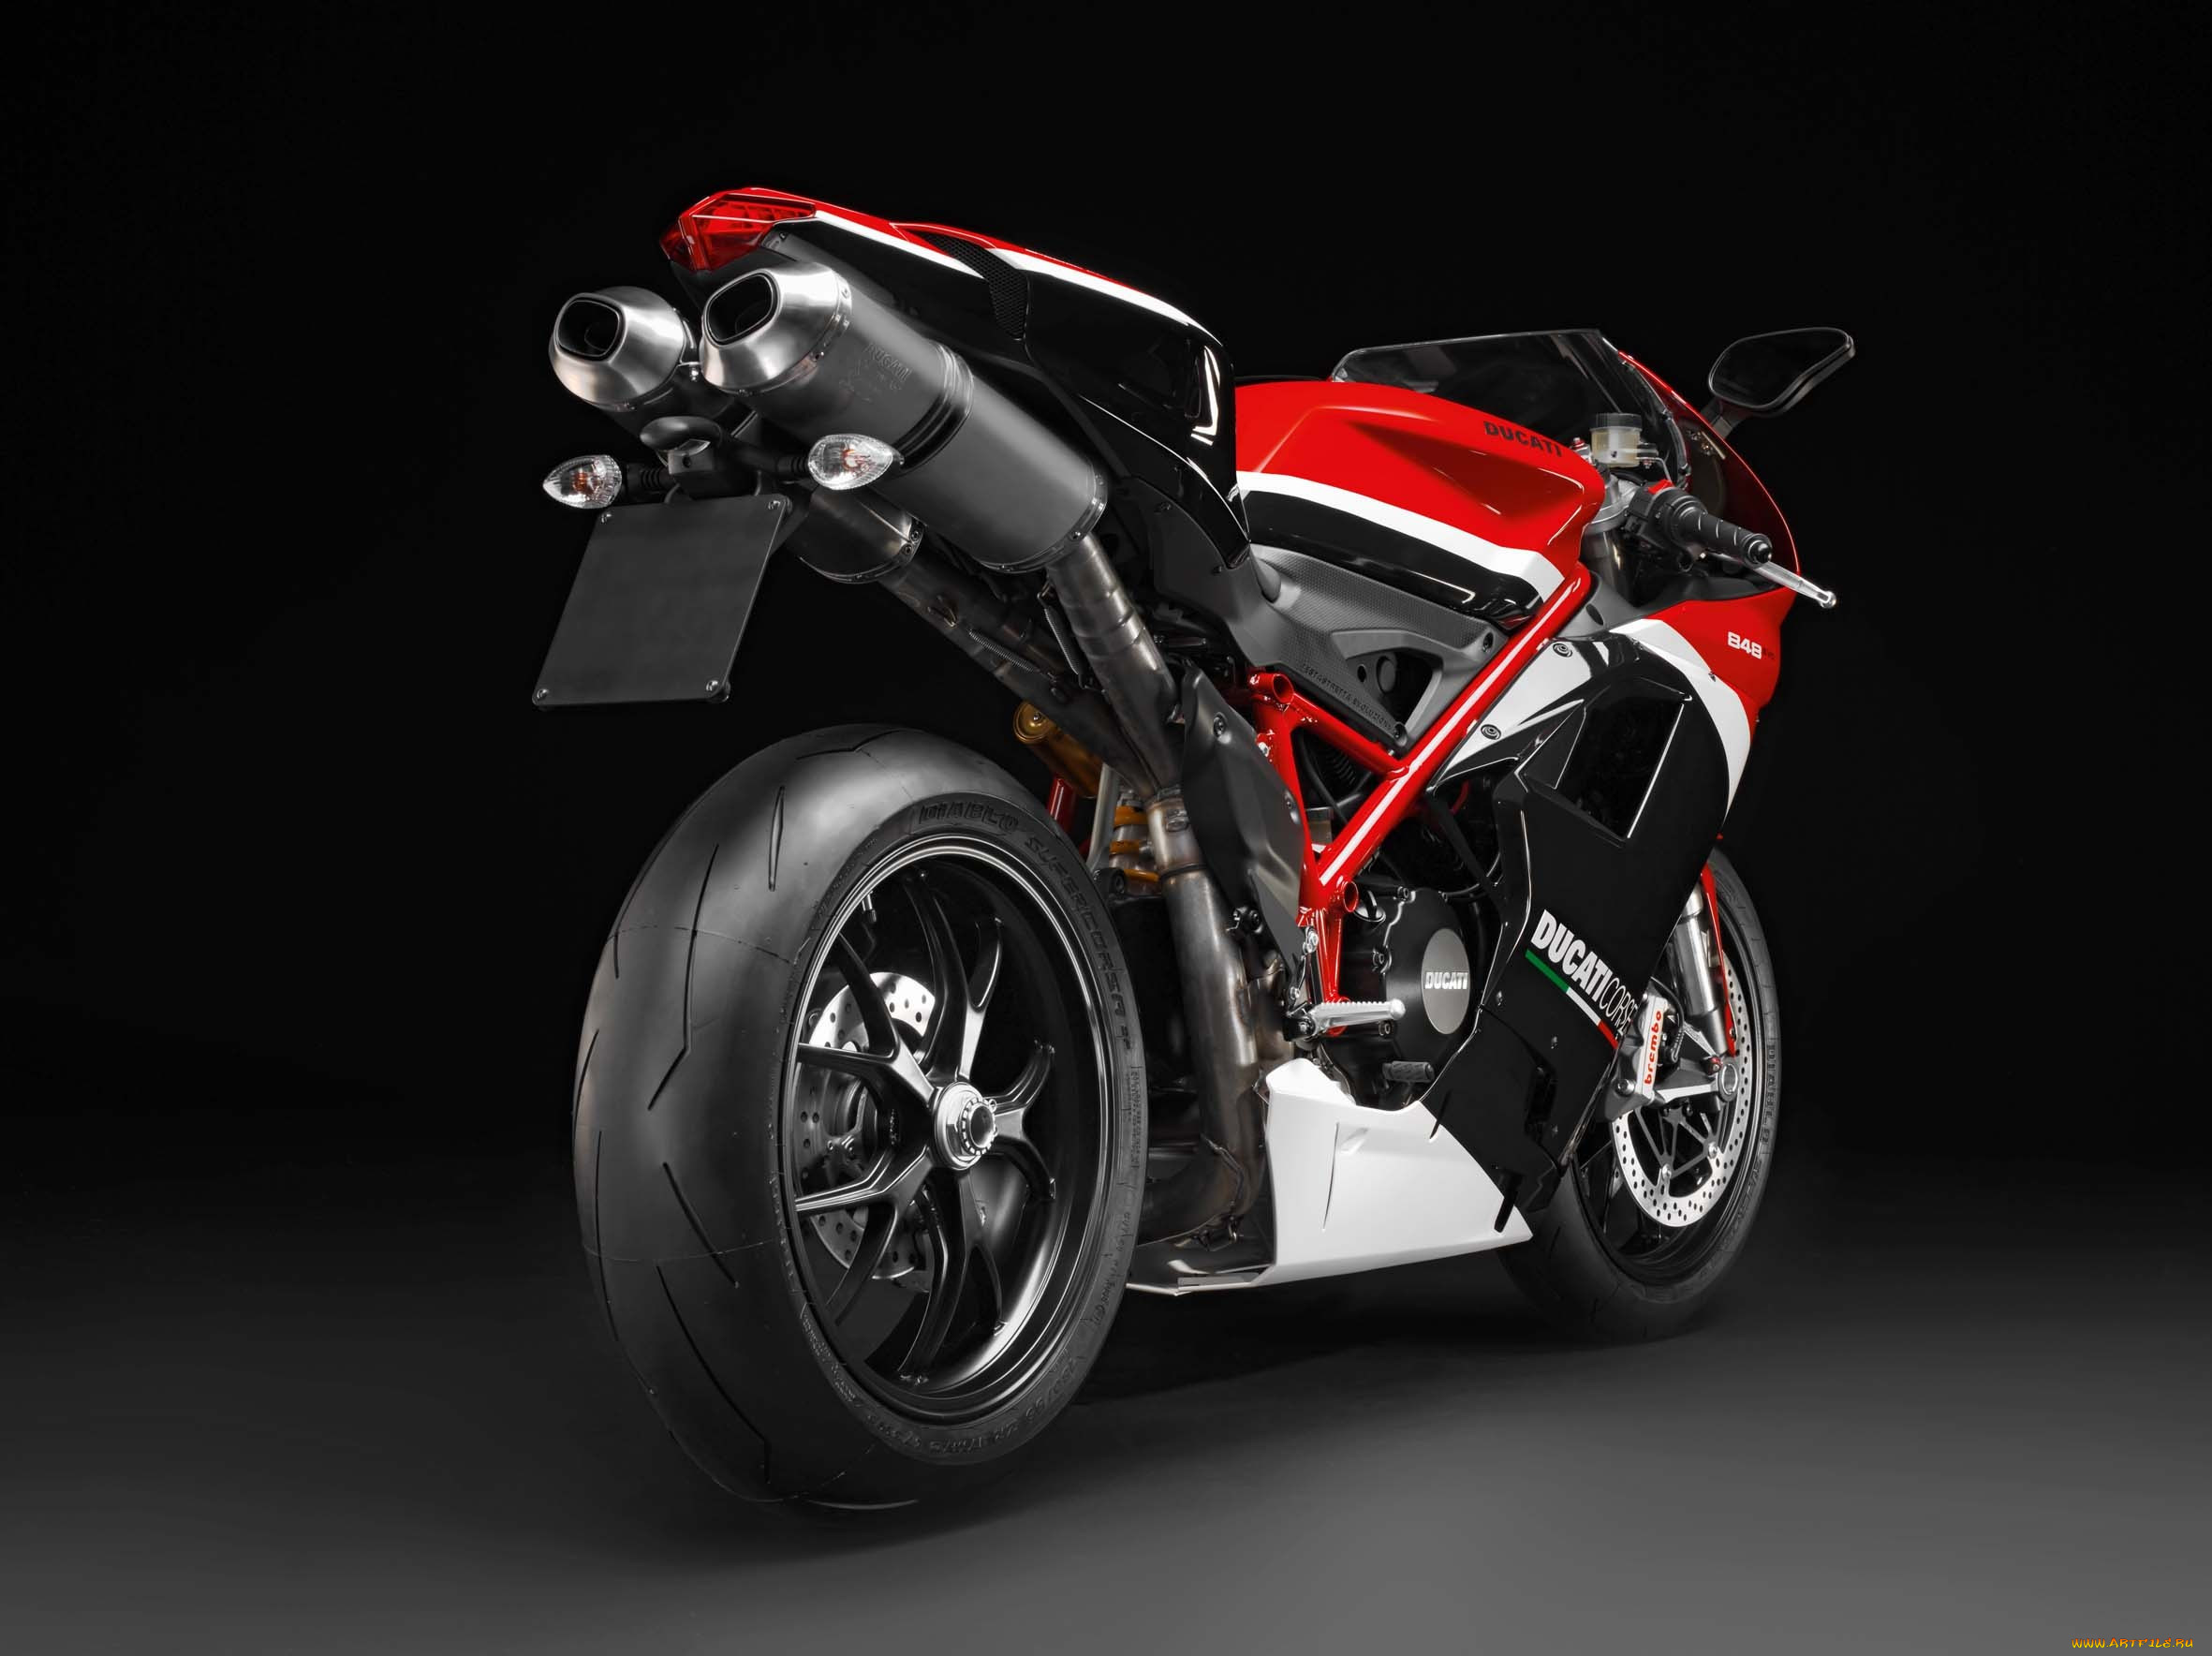 2012-ducati-superbike-848-evo-corse-special-edition, , ducati, corse